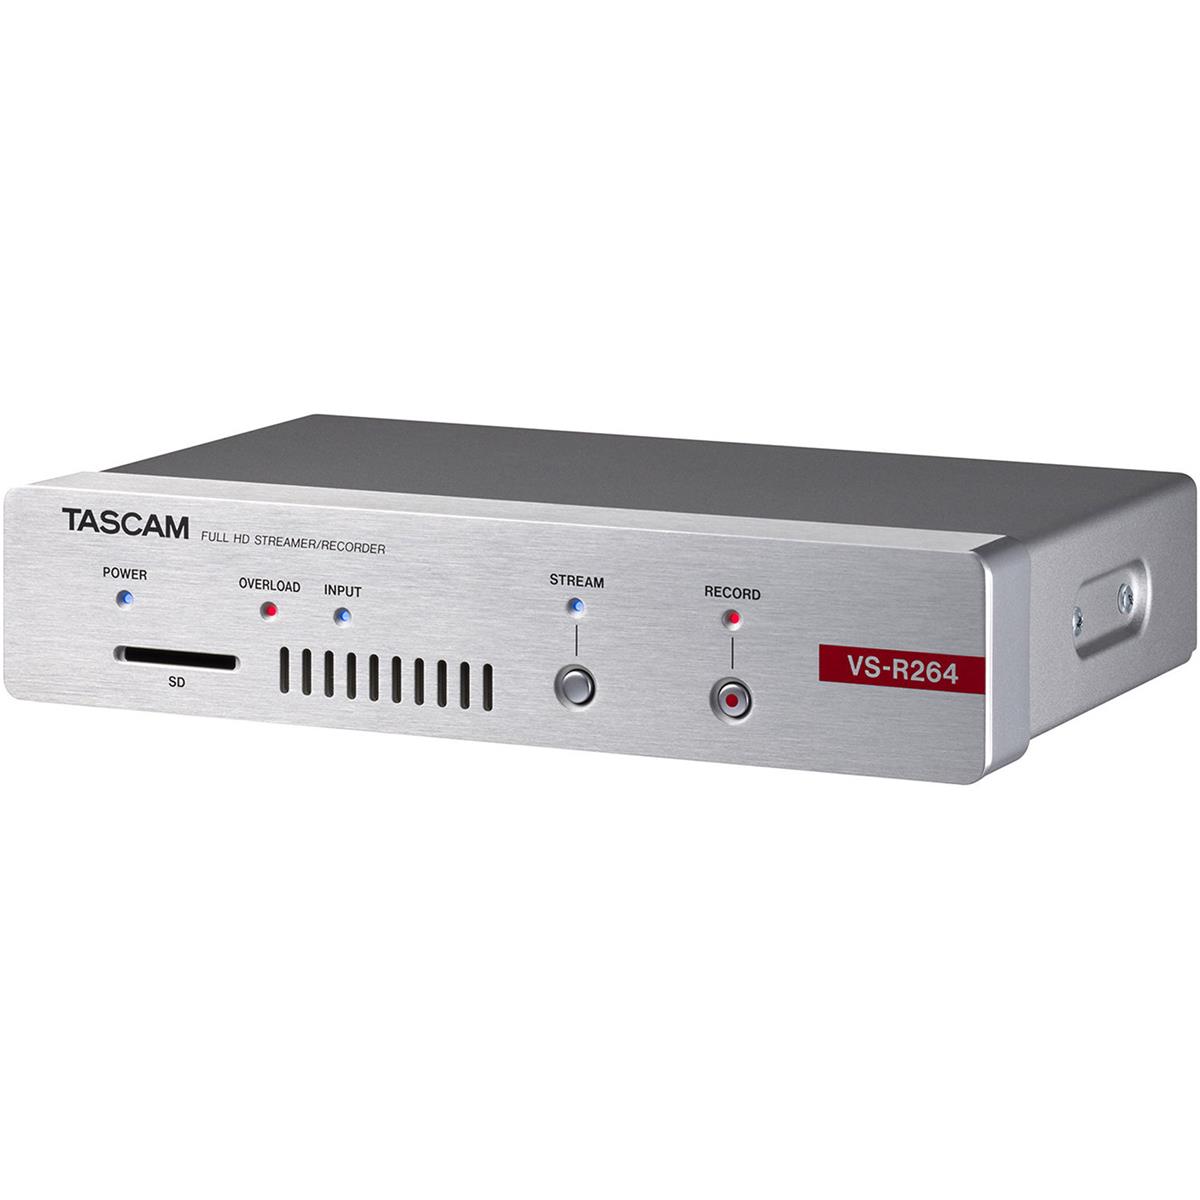 Image of Tascam VSR-264 Full HD Video Streamer/Recorder &amp; IP Live Streaming Encoder